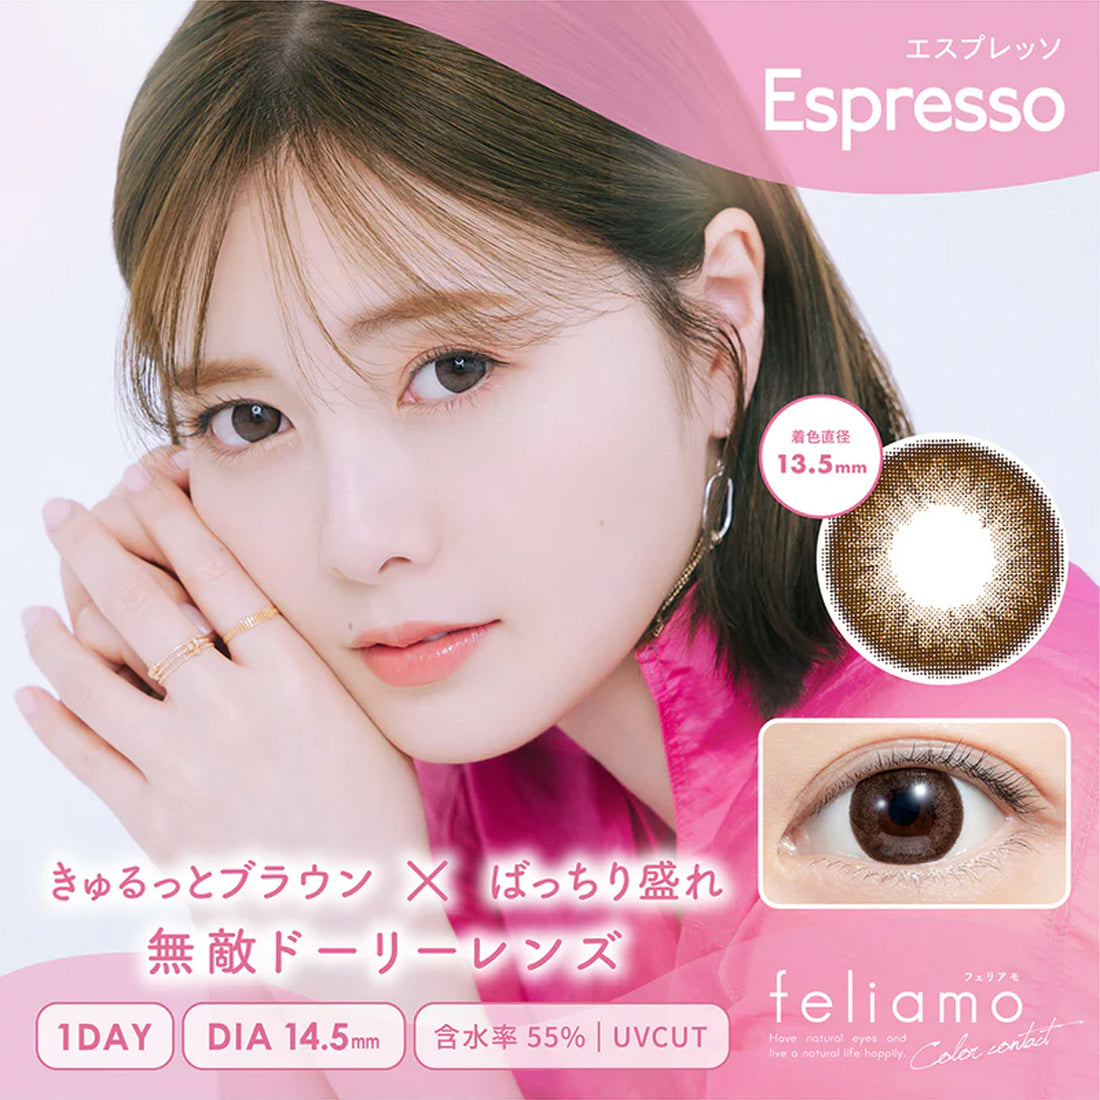 Feliamo 1Day Contact Lenses-Espresso 10pcs